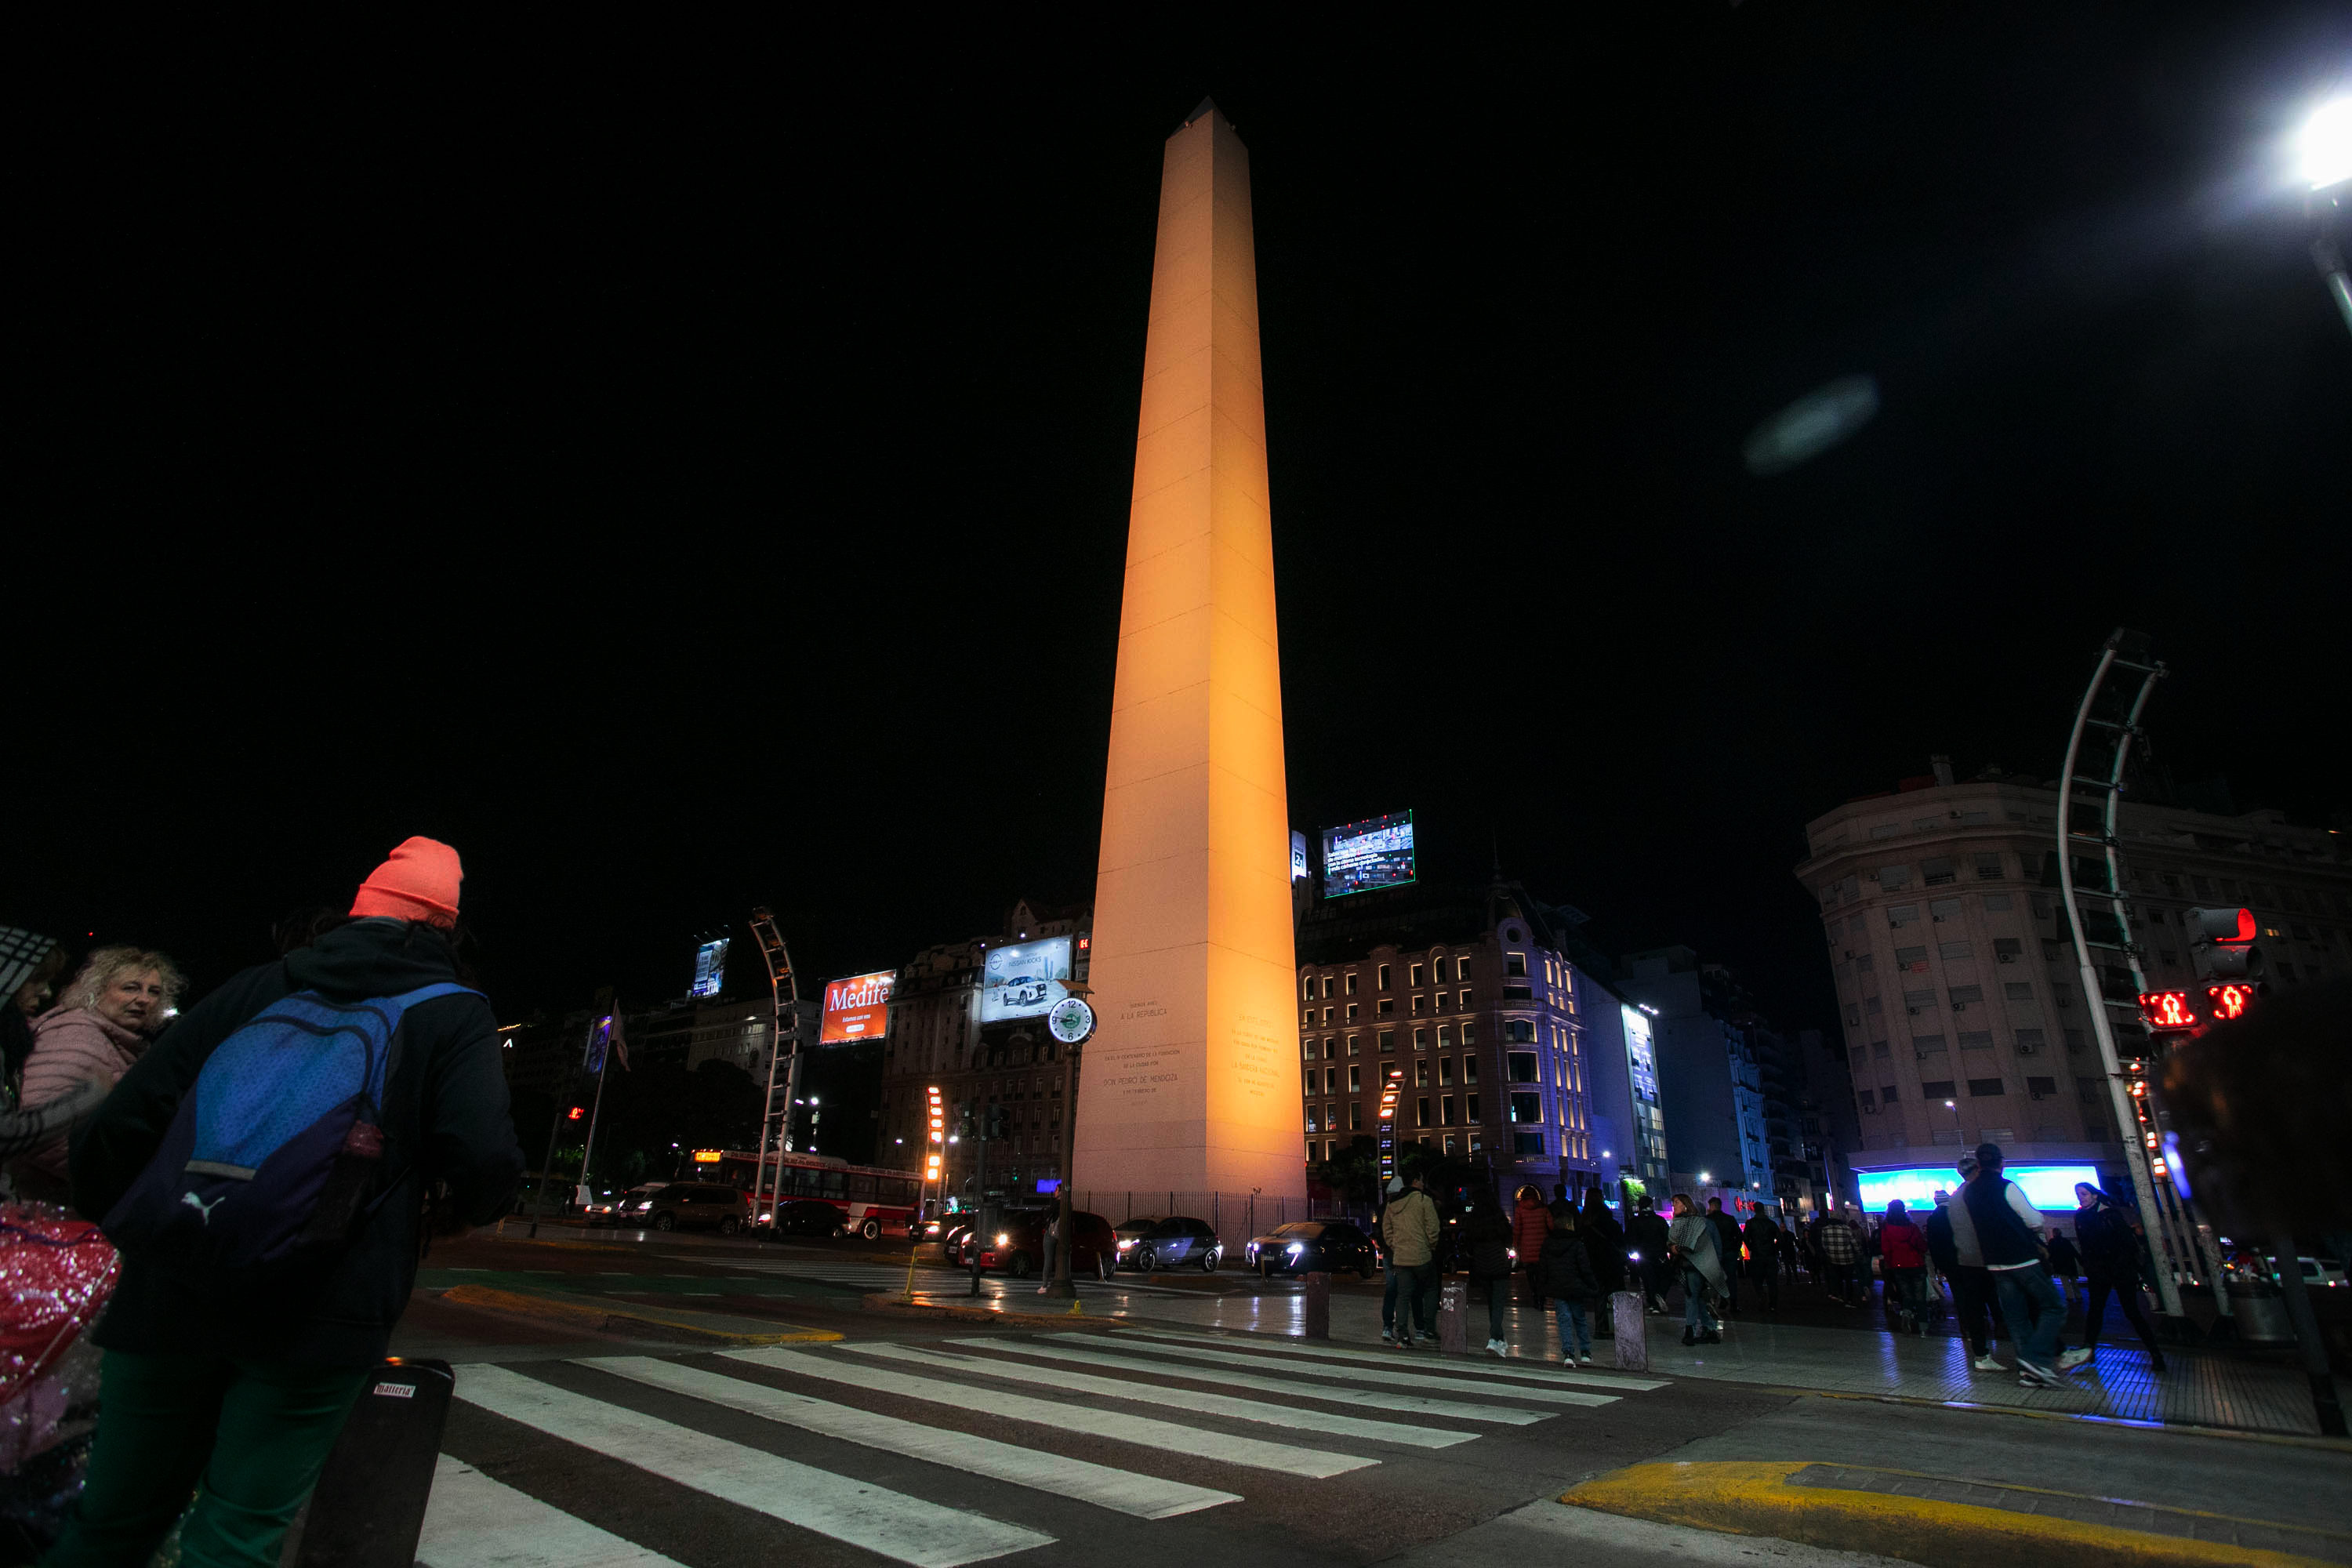 La Ciudad ilumina monumentos durante el mes de junio